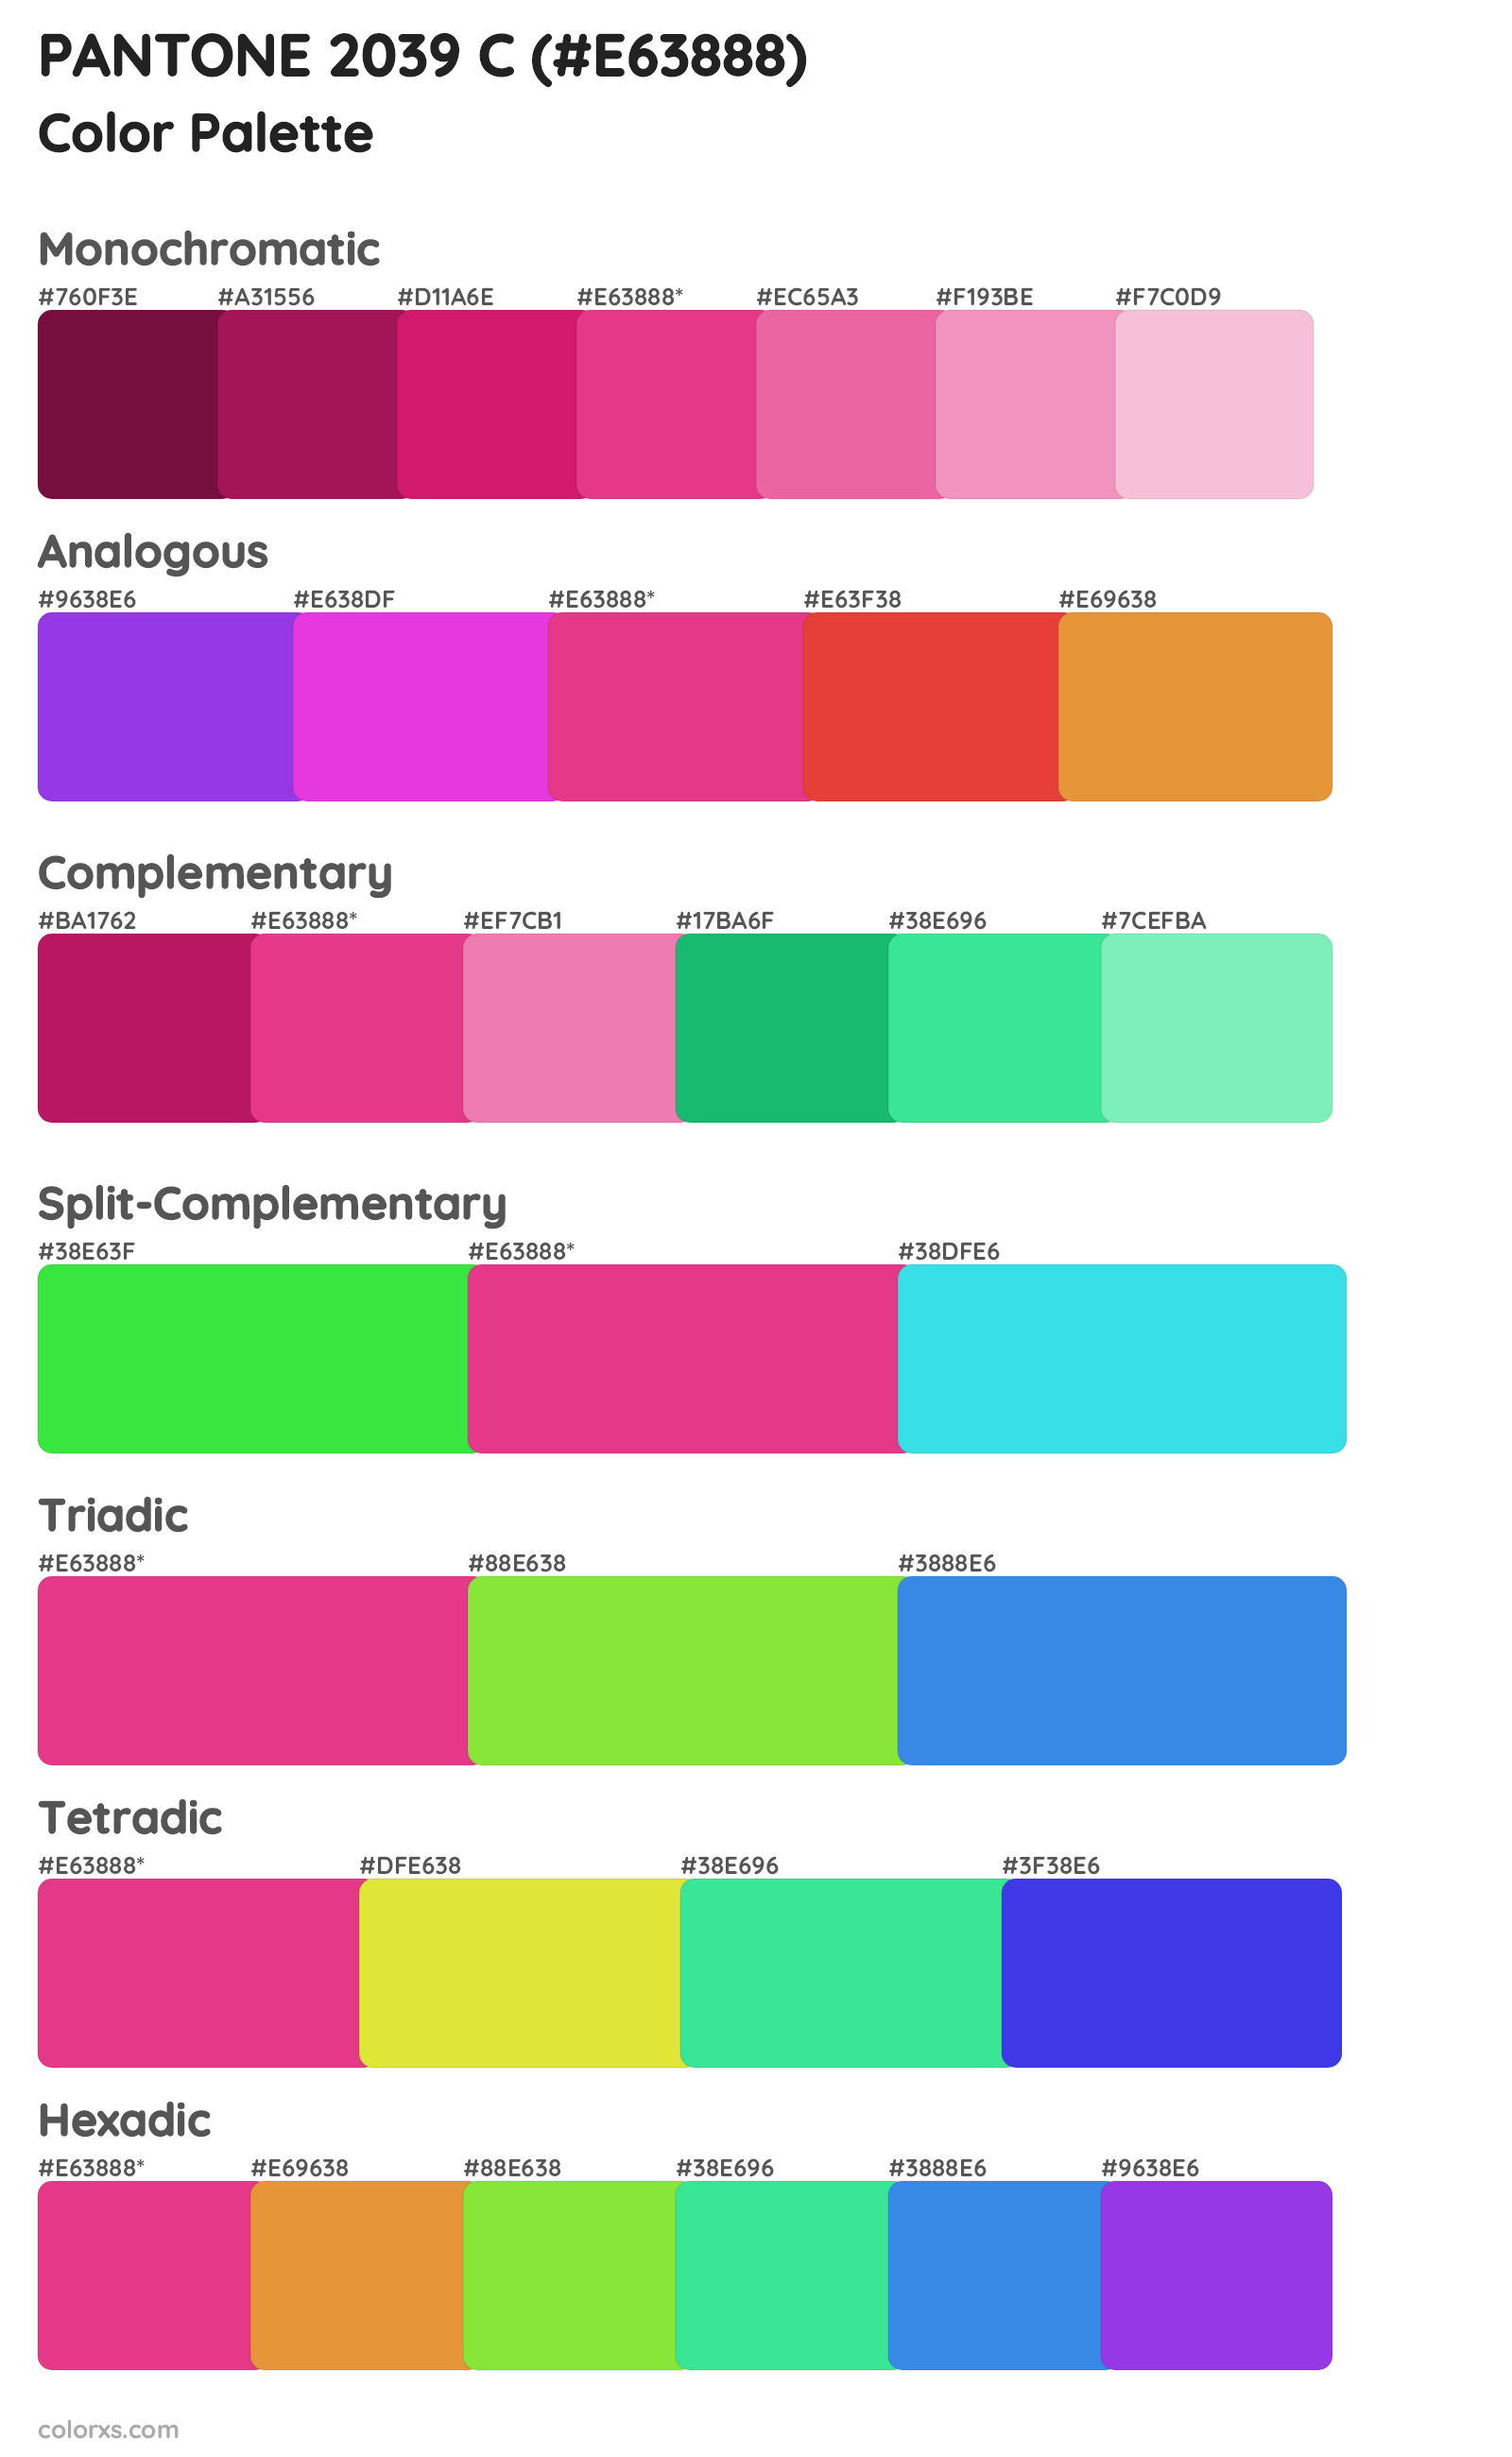 PANTONE 2039 C Color Scheme Palettes